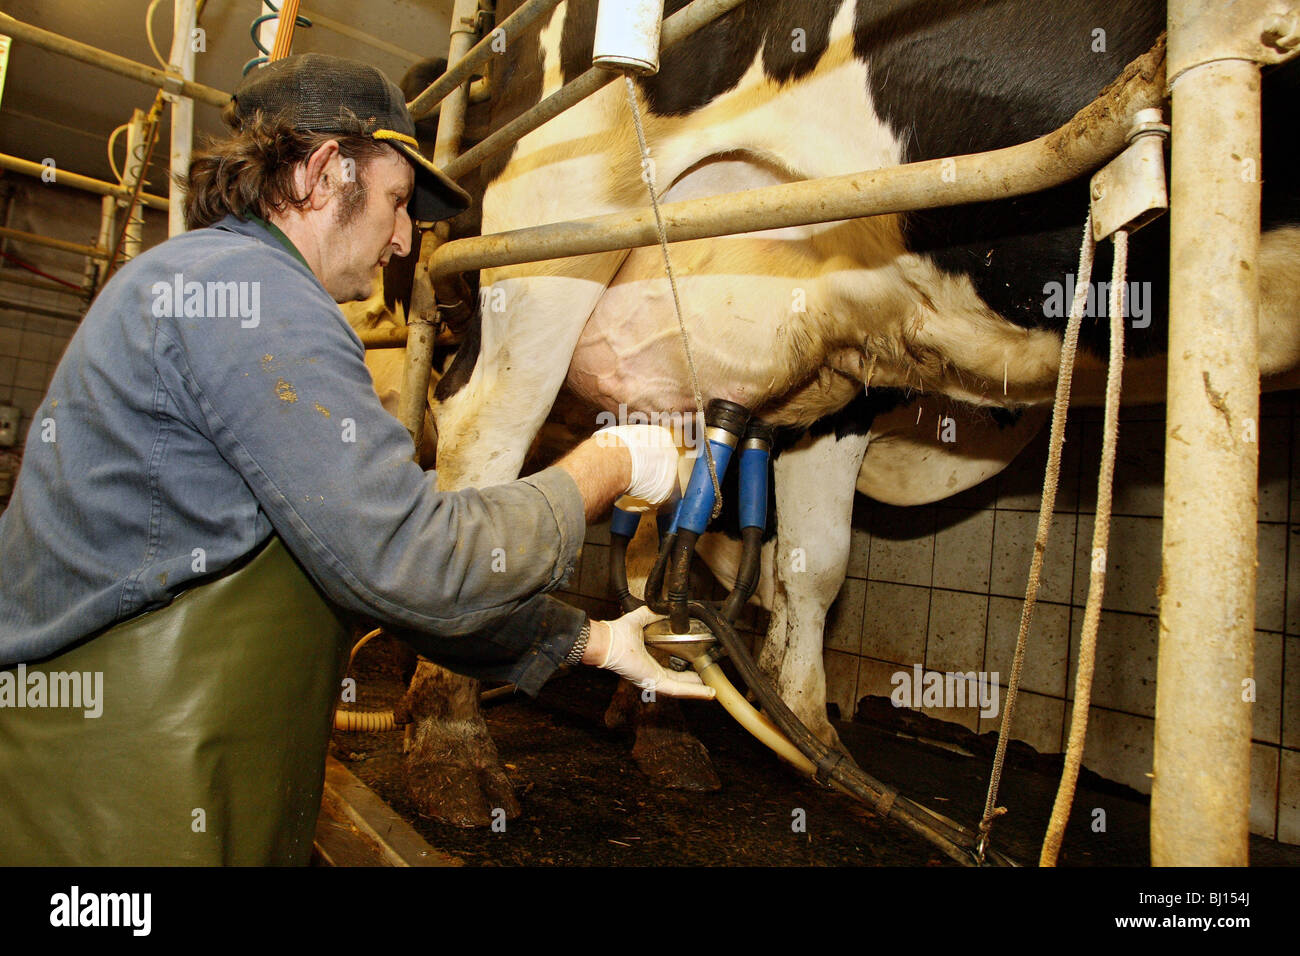 Avec les machines à traire les vaches traites, Kloster Lehnin, Allemagne Banque D'Images